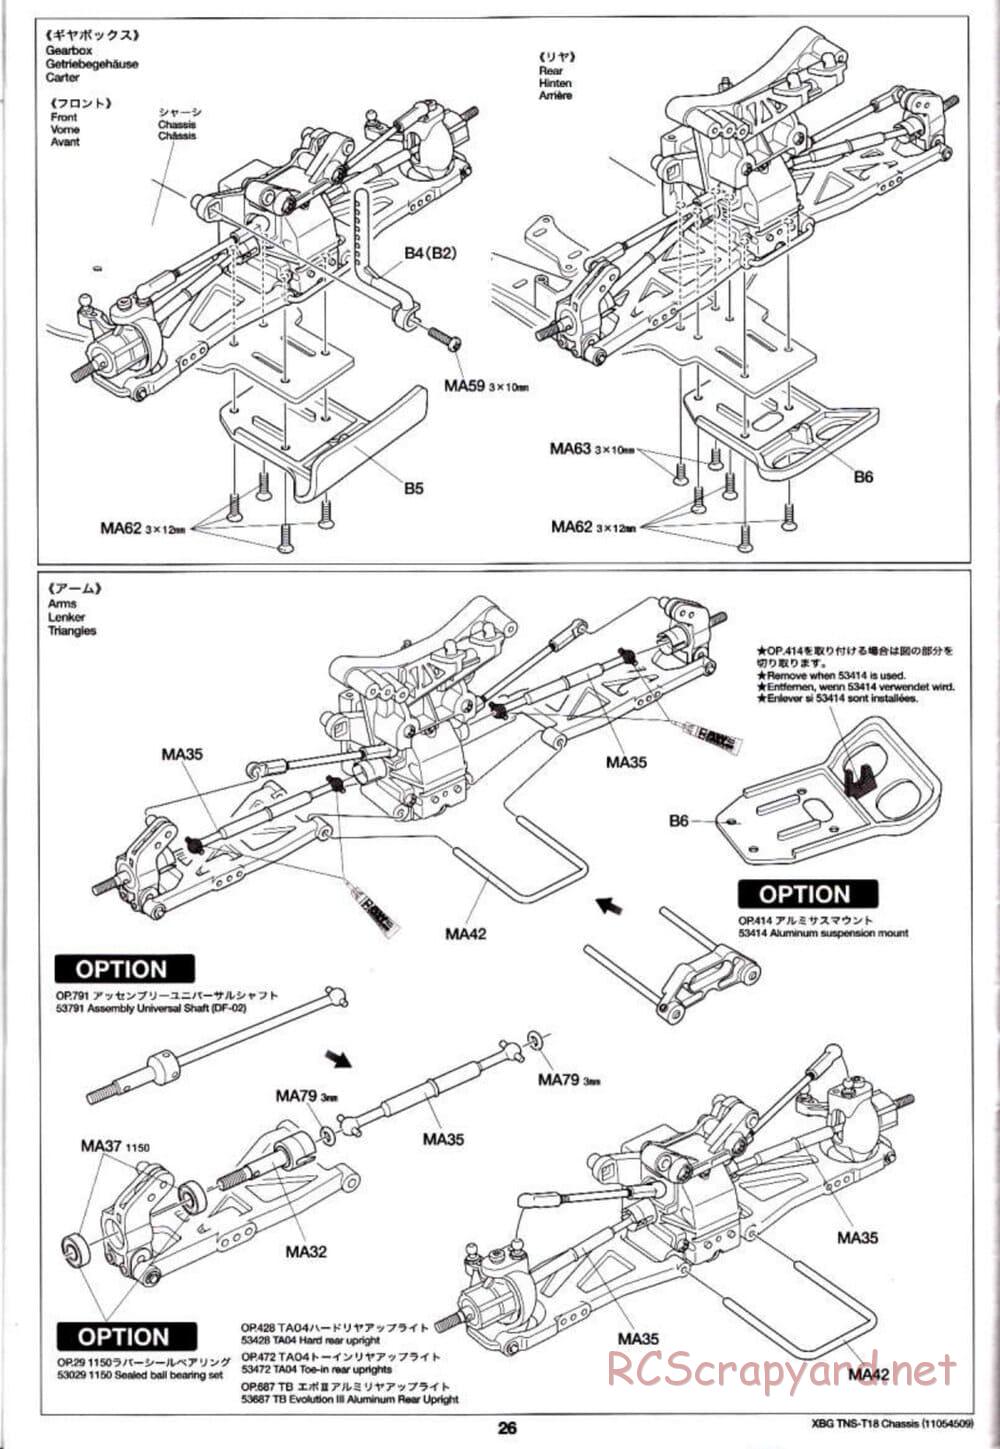 Tamiya - TNS-T18 Chassis - Manual - Page 26